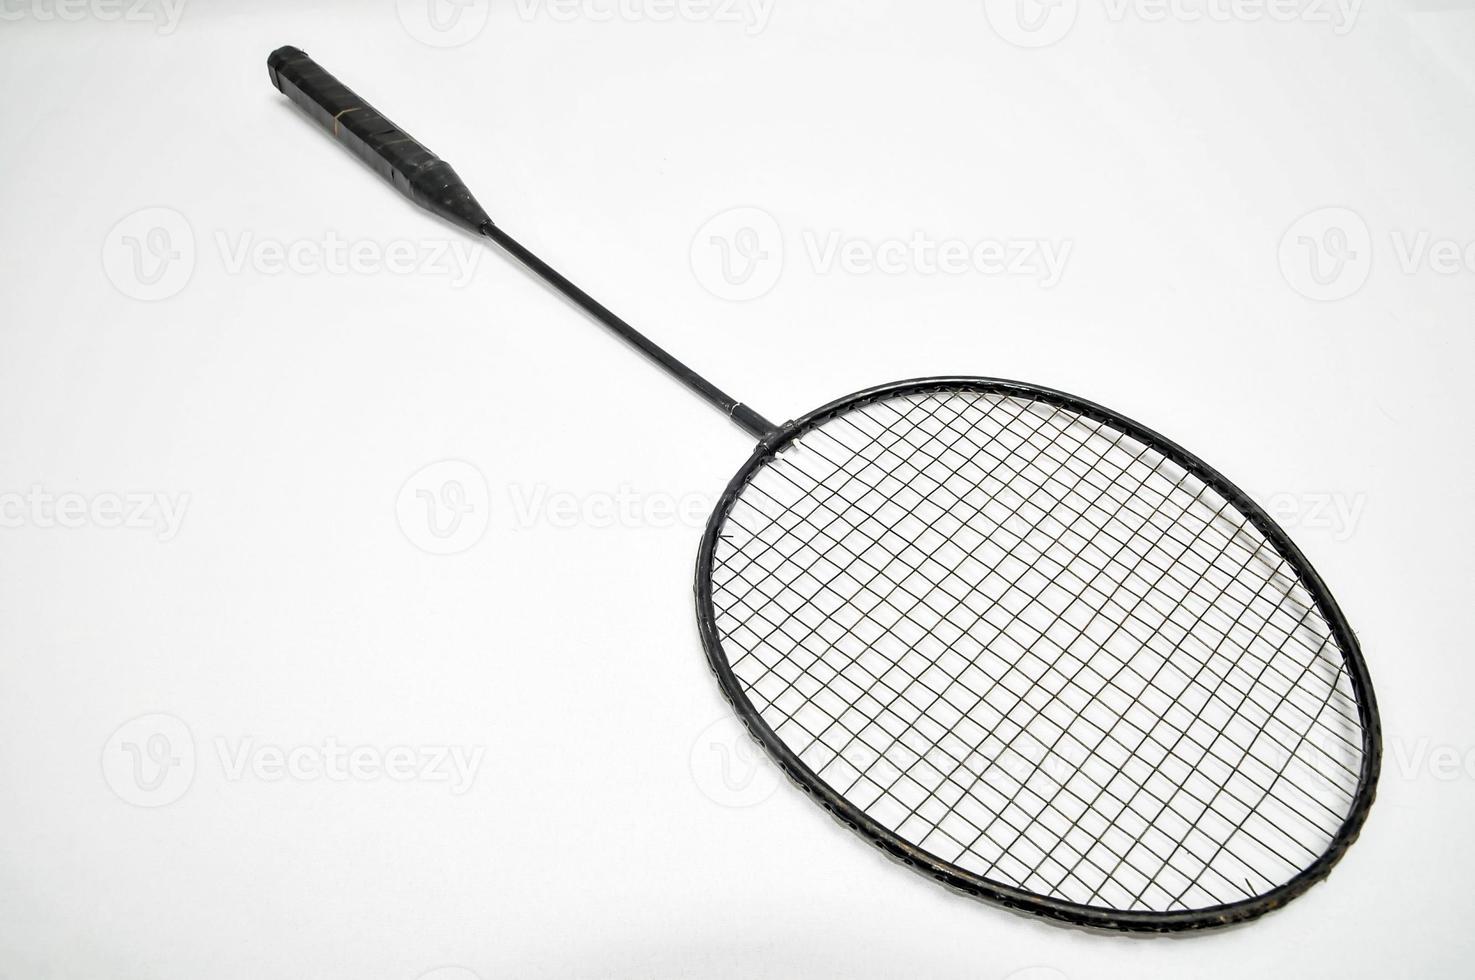 tennis raquette sur blanc photo